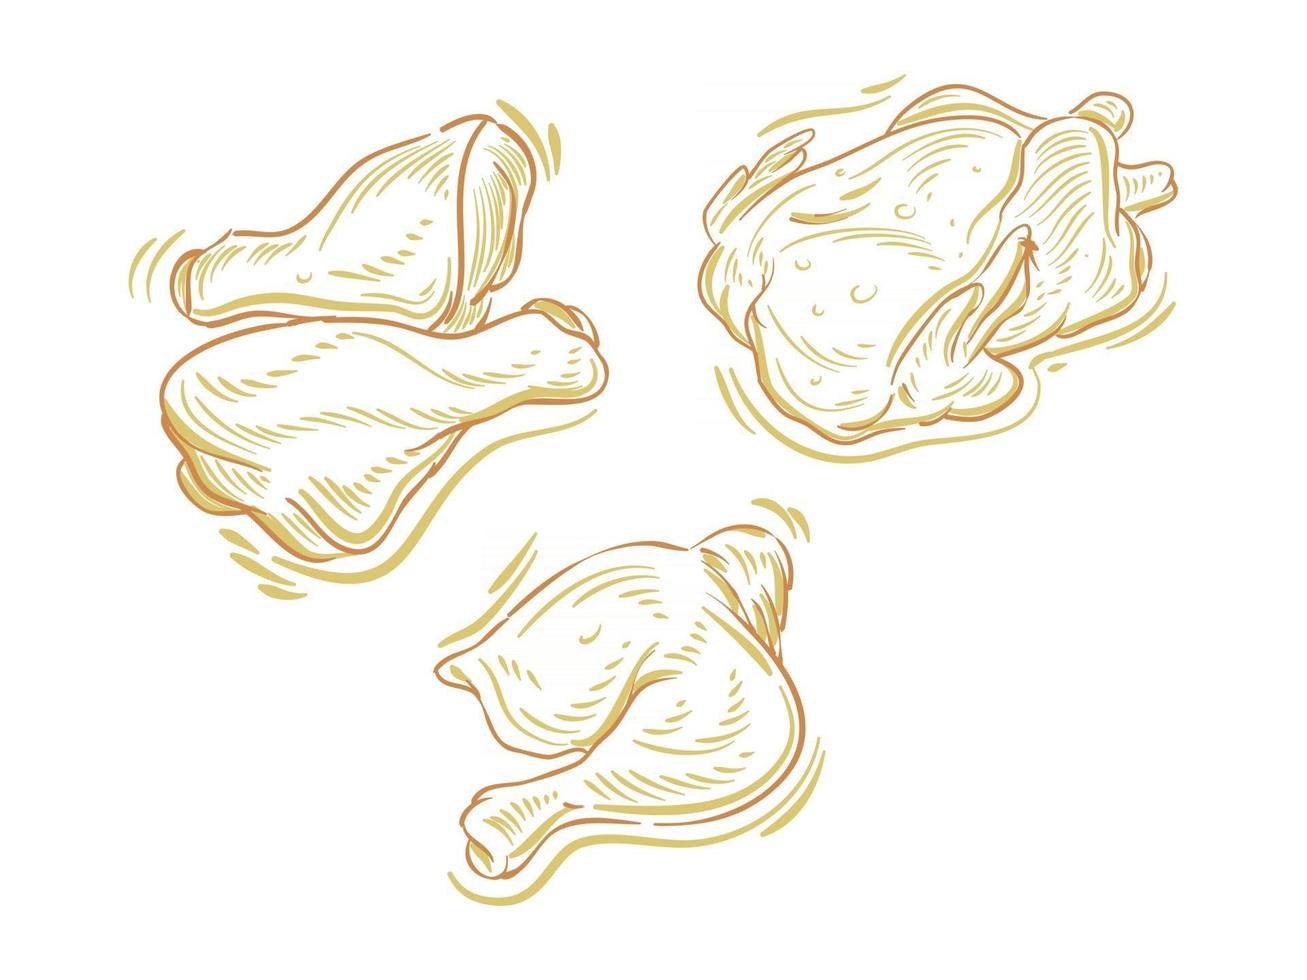 Stellen Sie flache Illustration von Hühnerfleisch für Branding- und Logoelement ein vektor